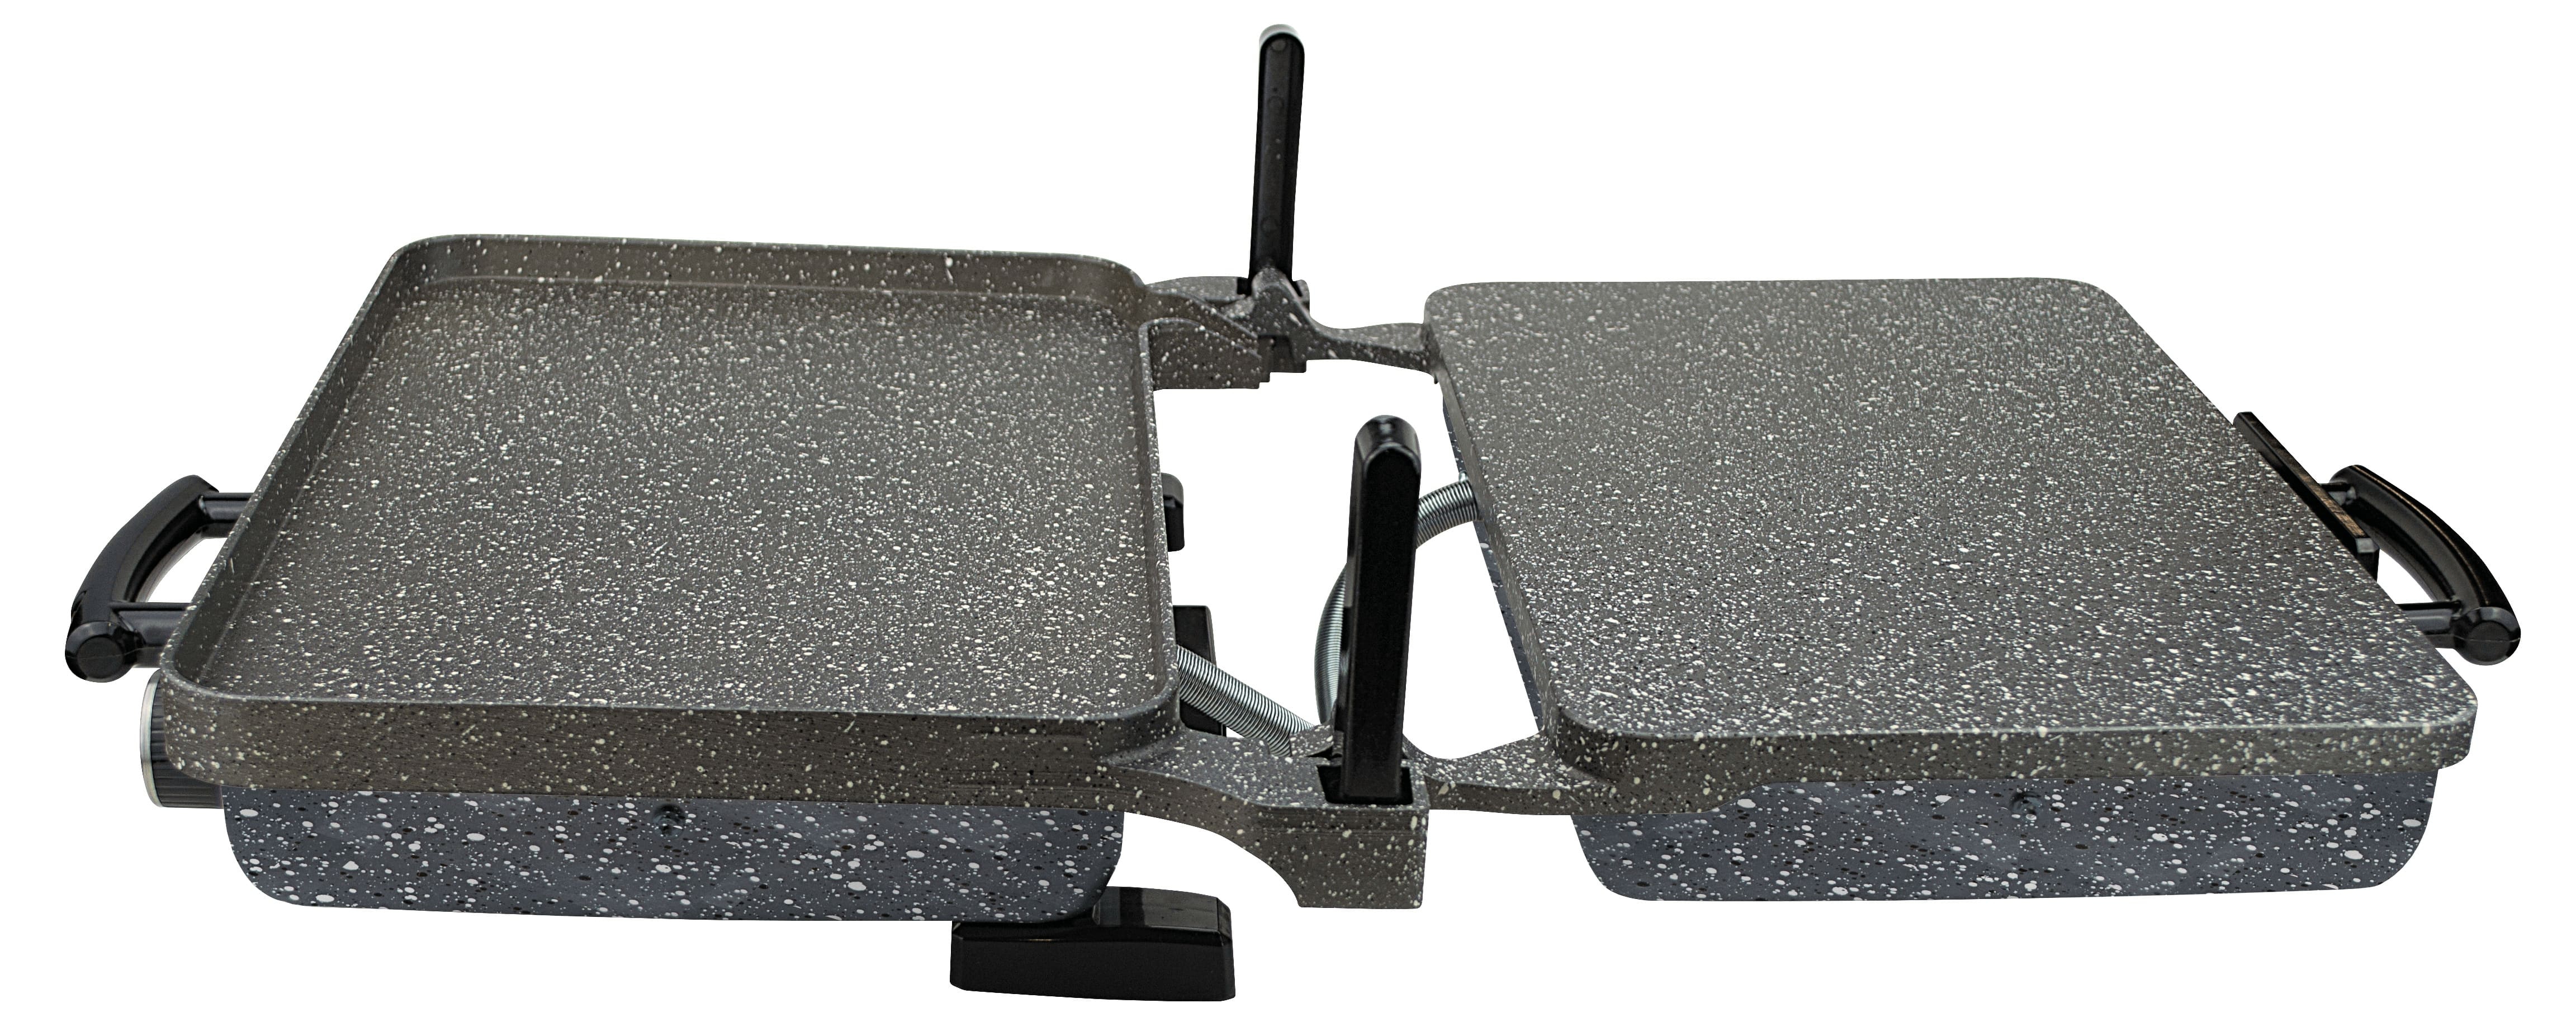 Sermelex JUMBO Granit Grill (ANRASİT GRİ) - Silex Bazlama ve Lahmacun Makinesi